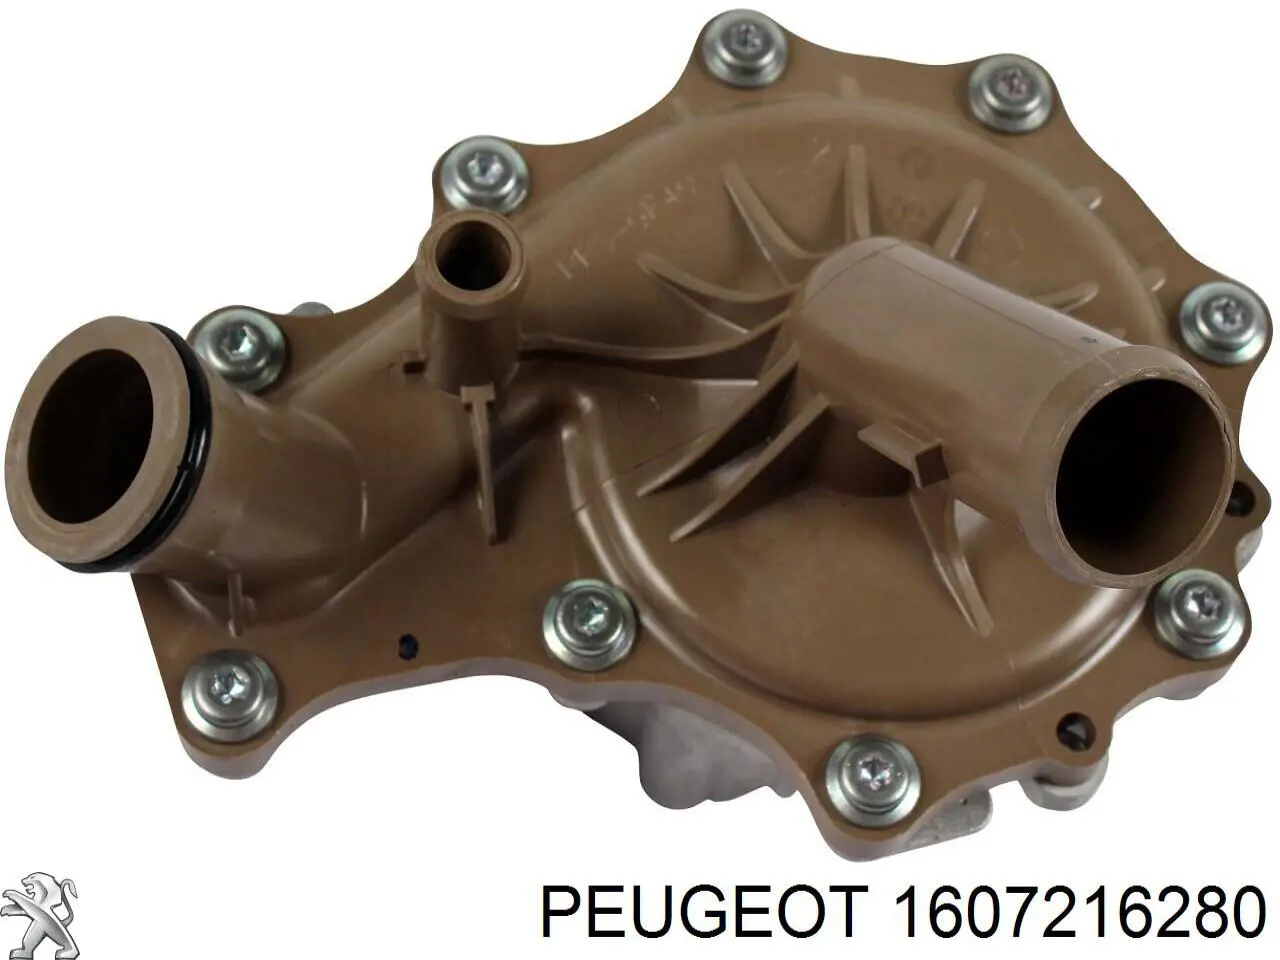 1607216280 Peugeot/Citroen помпа водяная (насос охлаждения, в сборе с корпусом)